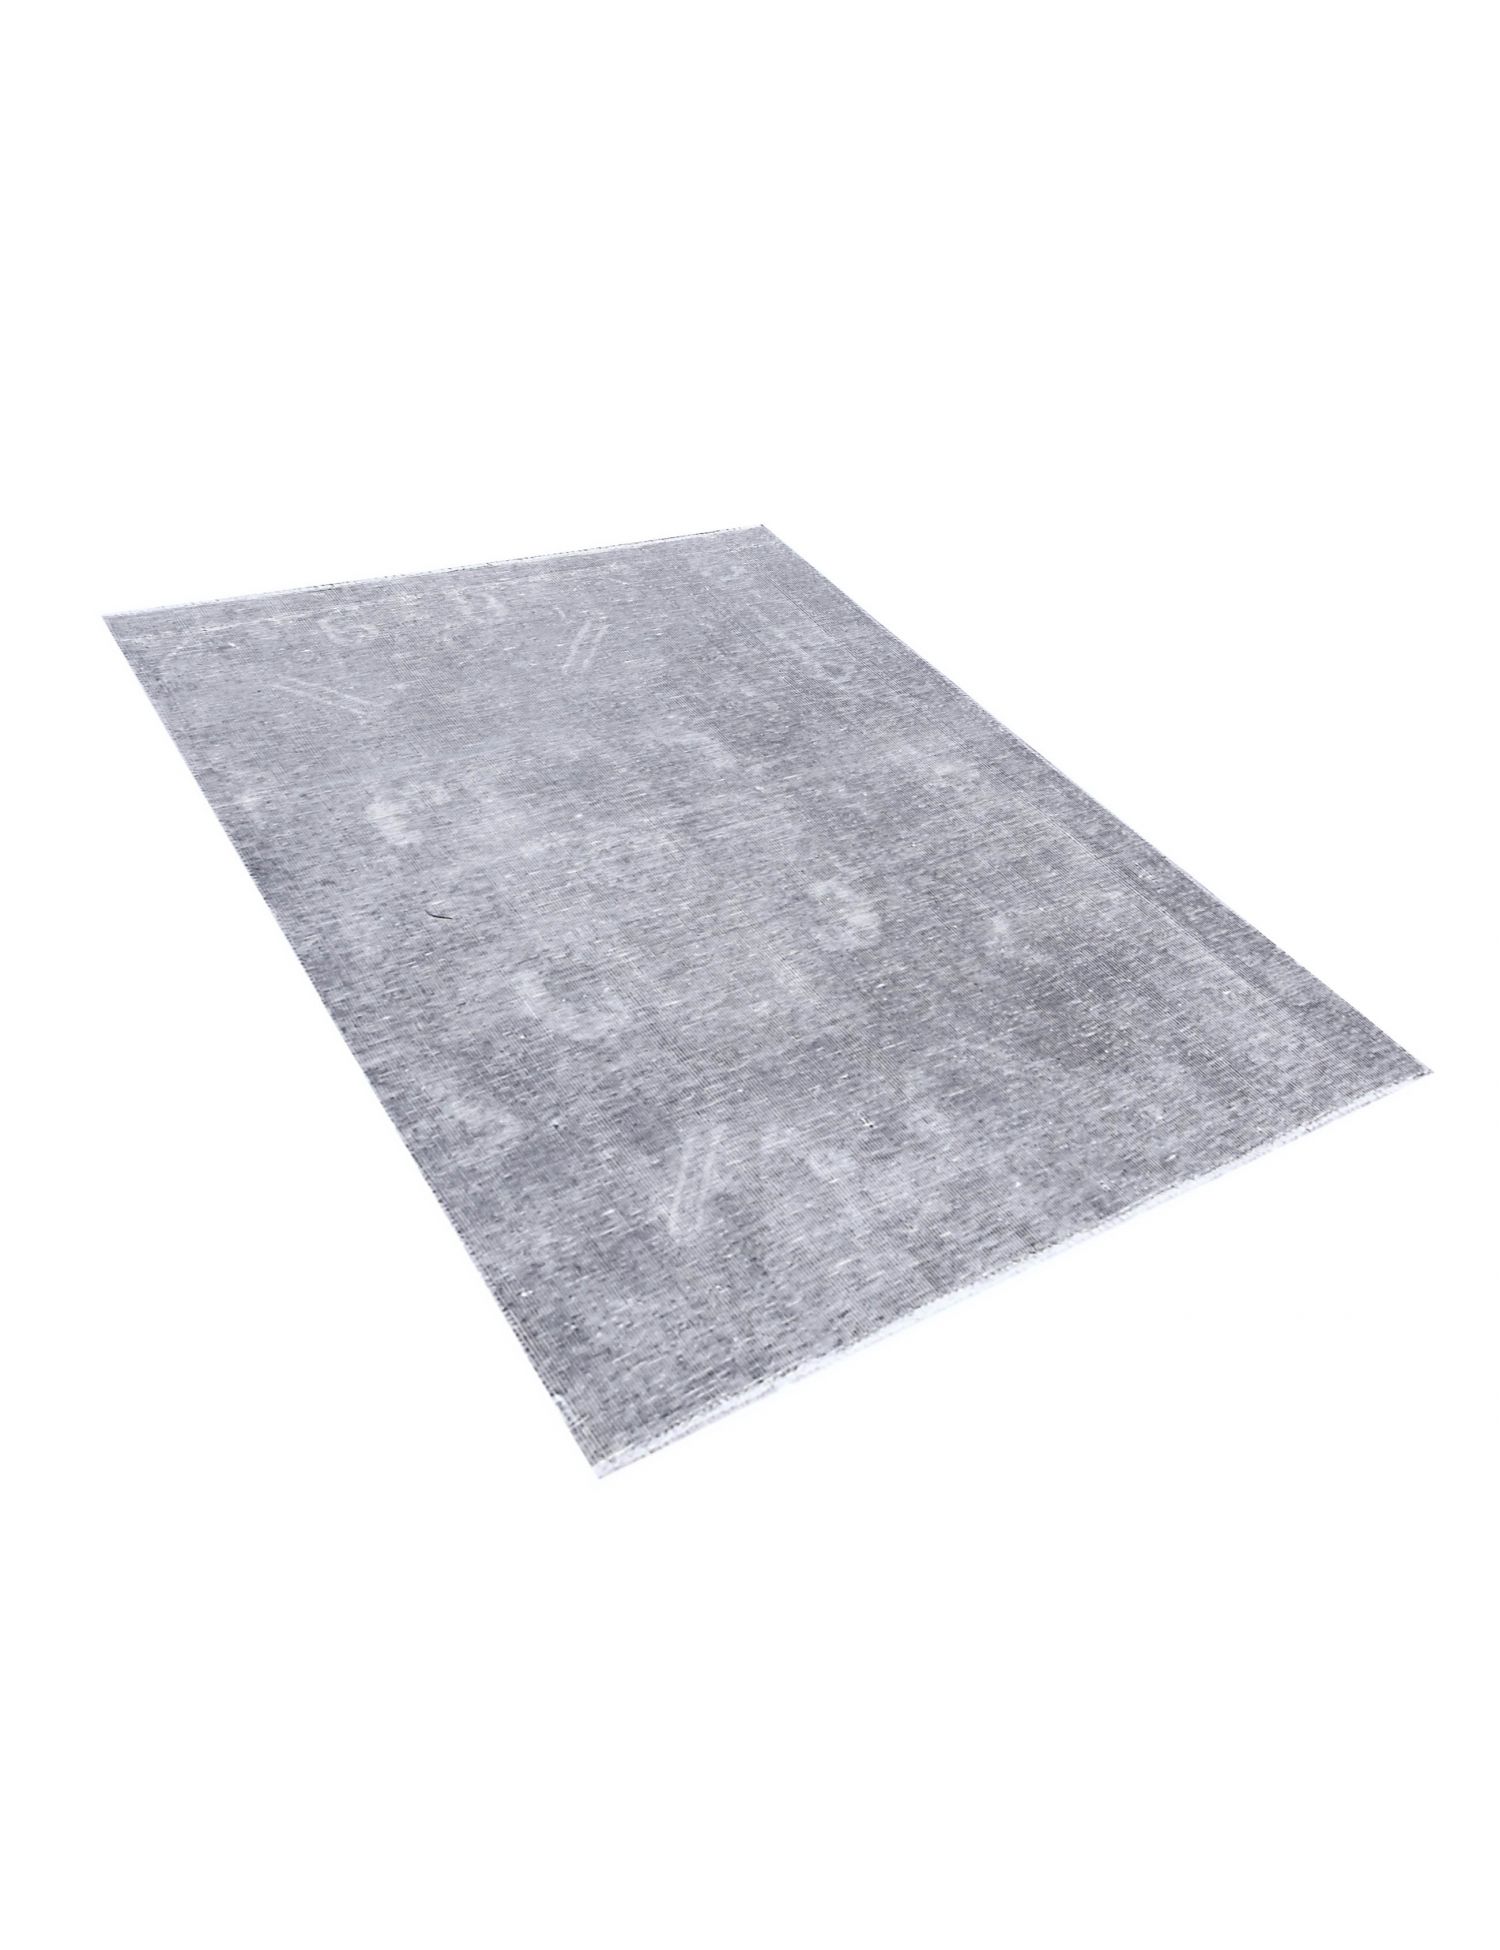 Persischer vintage teppich  grau <br/>155 x 115 cm